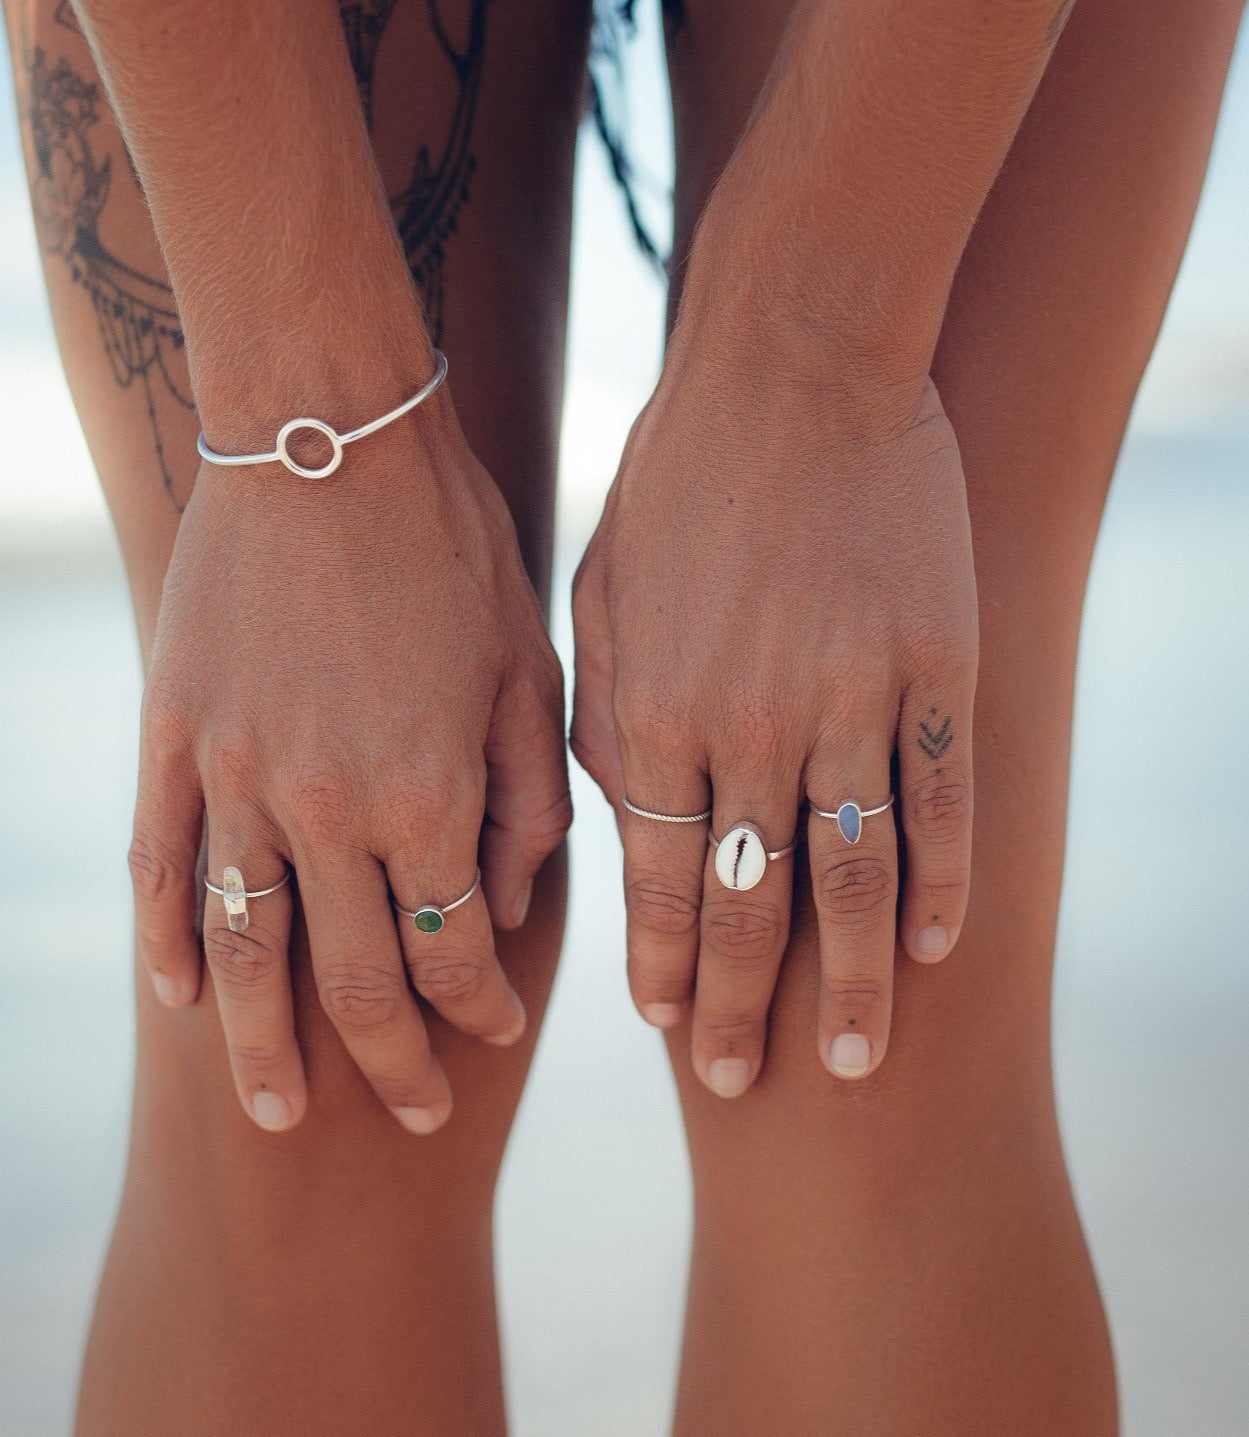 Handmade with love | VERLAN Jewellery | Bali Tales | Fairfashion | Handgemachte Ringe im Boho Look aus Bali | Fair und nachhaltig handgefertigter Schmuck | Sterlingsilber | Travel Feelings | Silberschmuck | Simple Ring